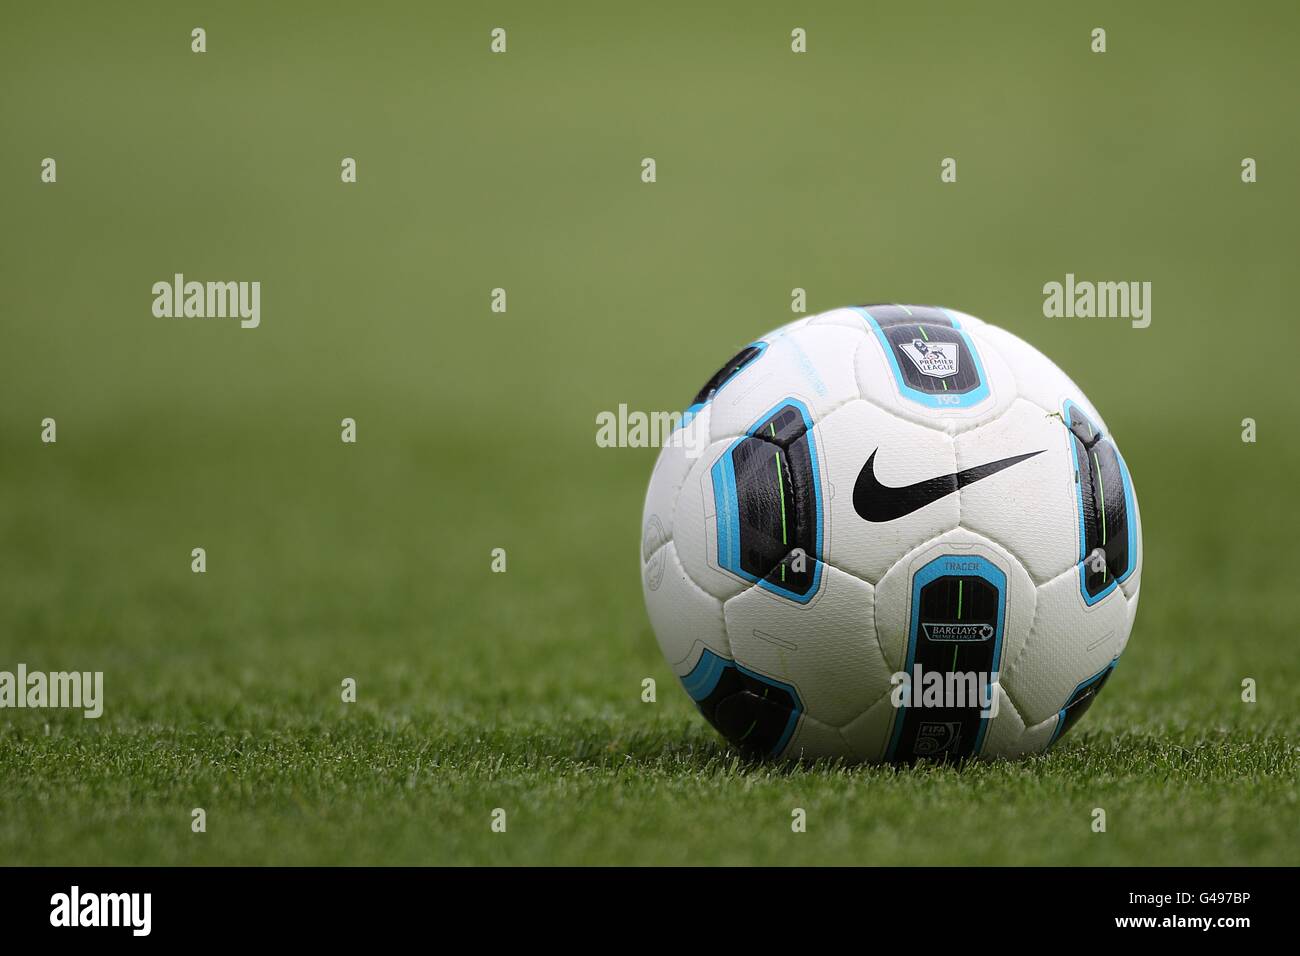 La palla Nike T90 Tracer, il pallone ufficiale della Barclays Premier  League Foto stock - Alamy